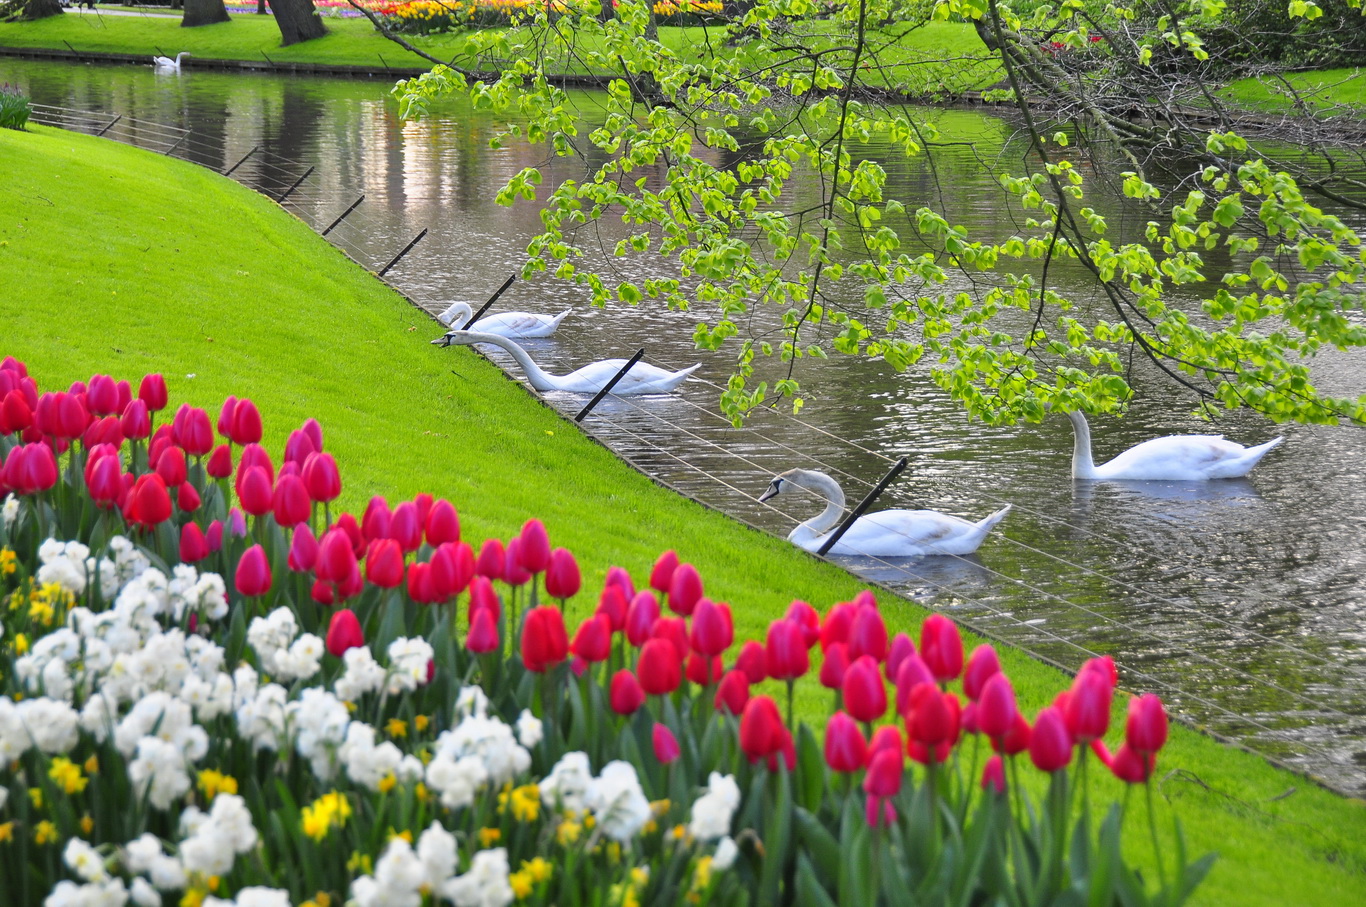 Thời tiết khí hậu Hà Lan - 4 mùa tươi đẹp, du lich phát triển quanh năm